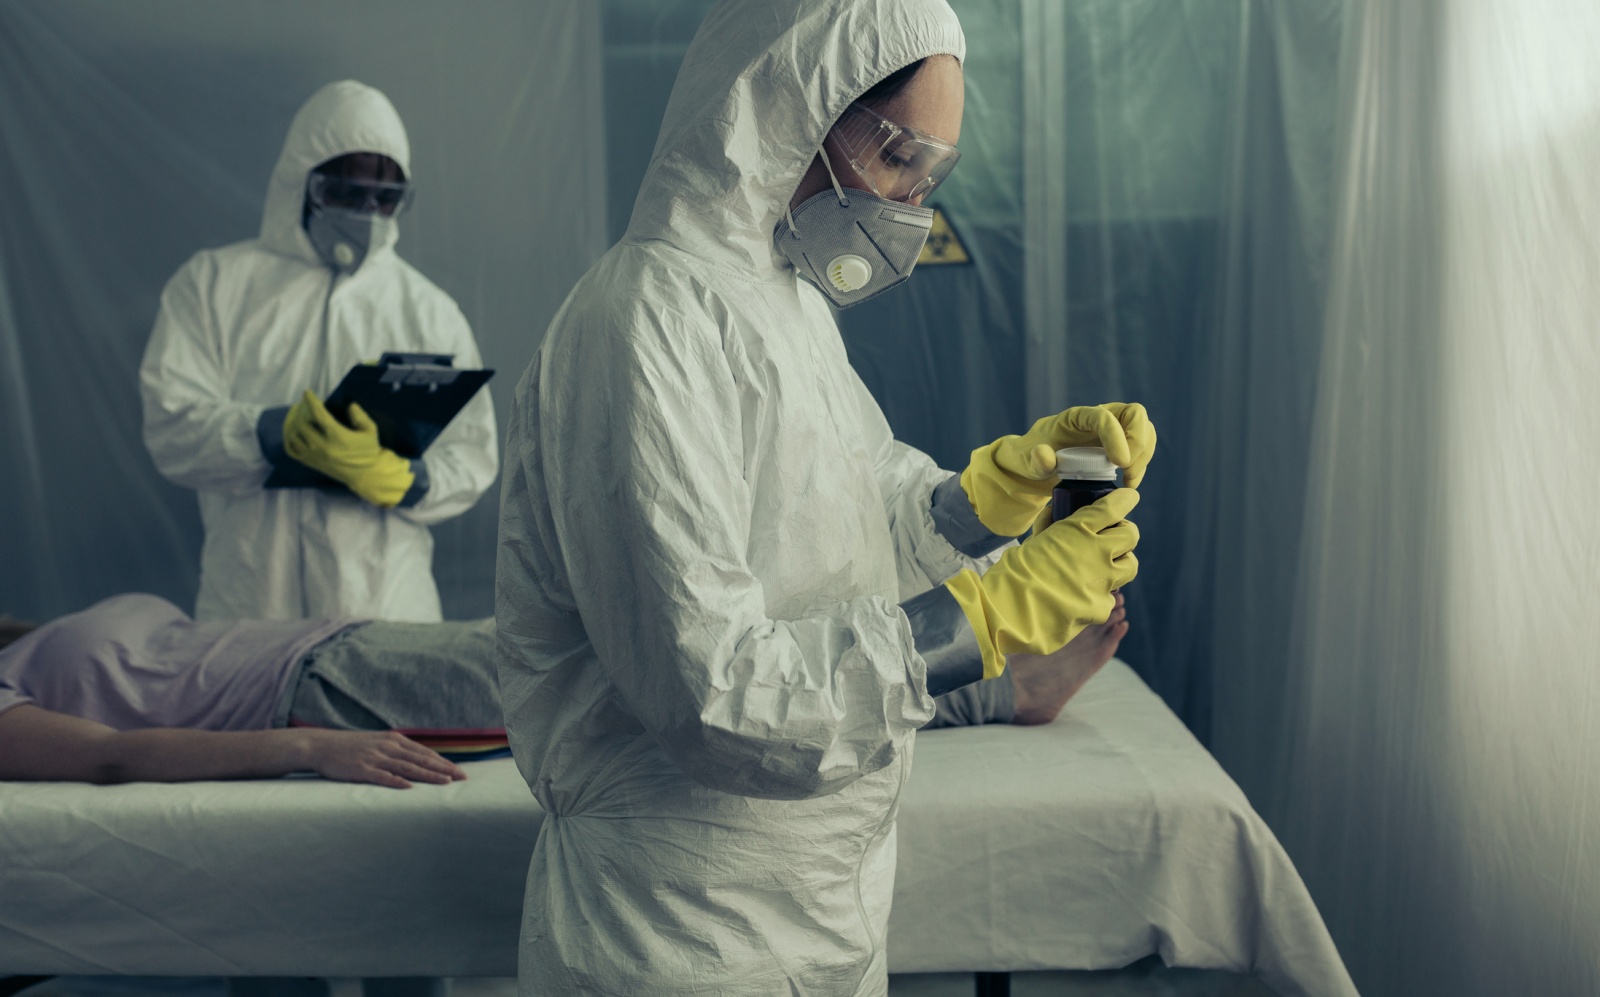 Visão | “Paciente zero”: os mistérios por trás das piores epidemias recentes